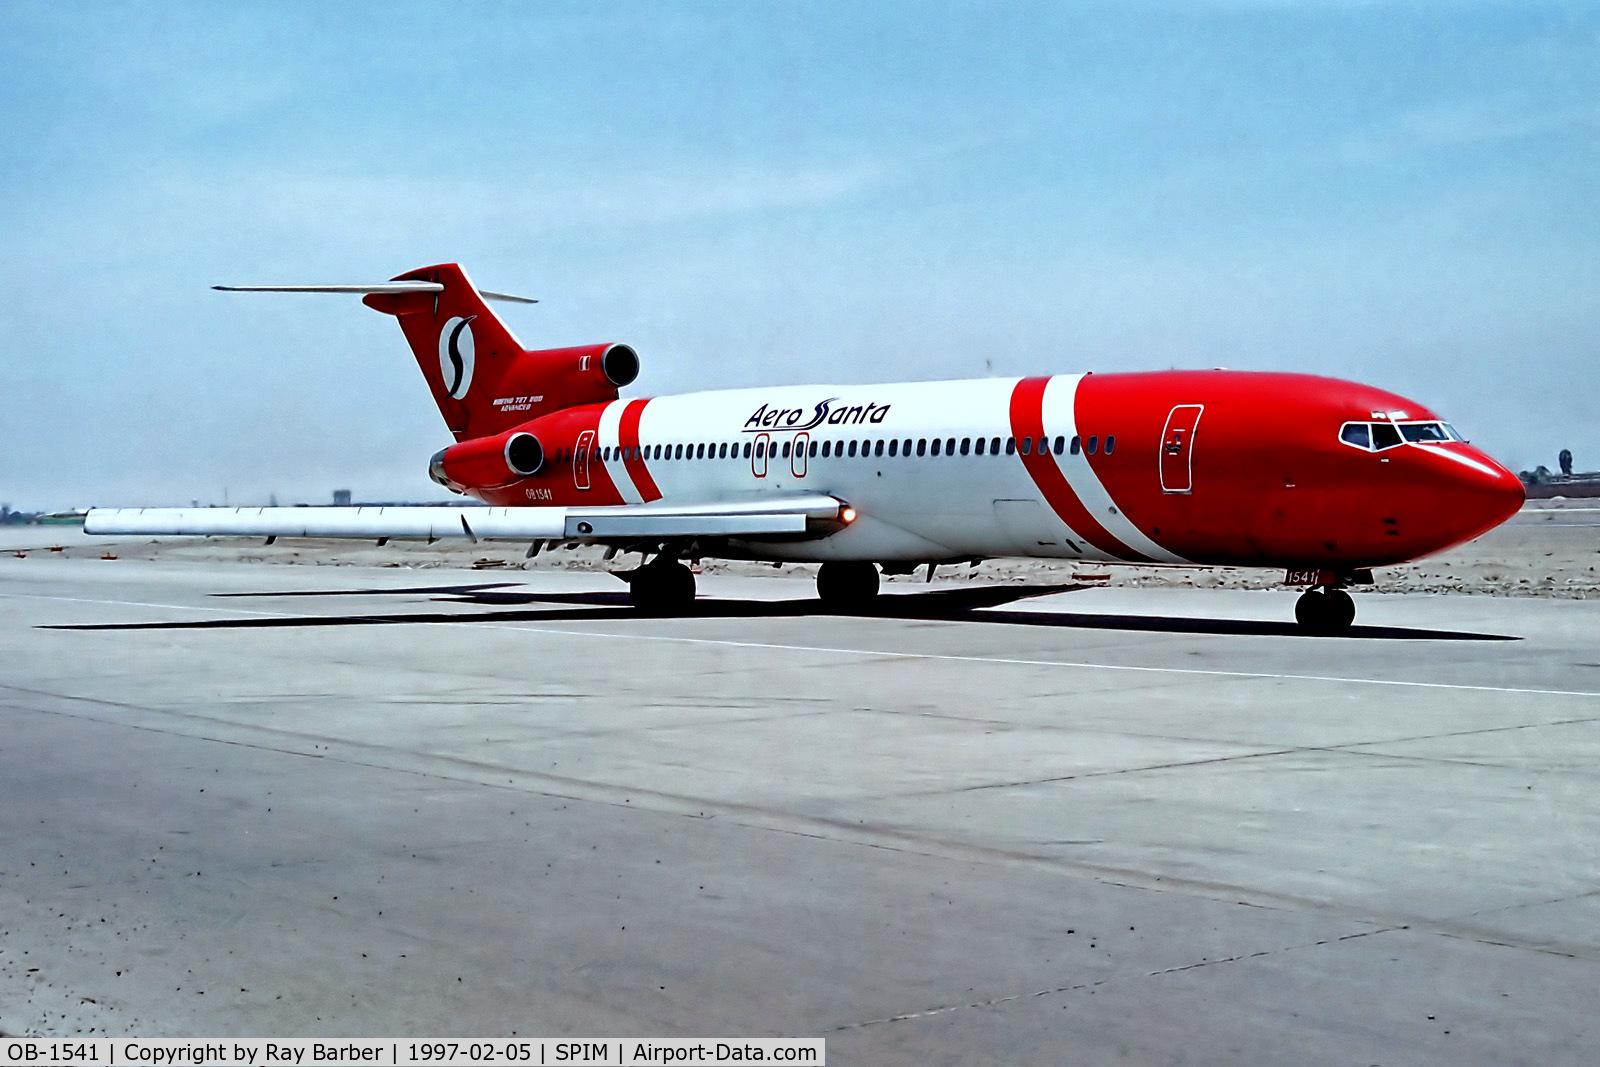 OB-1541, 1975 Boeing 727-264 C/N 21072, OB-1541   (OB1541) Boeing 727-264 [21072] (Aero Santa / Faucett) Lima-Jorge Chavez Int'l~OB 05/02/1997